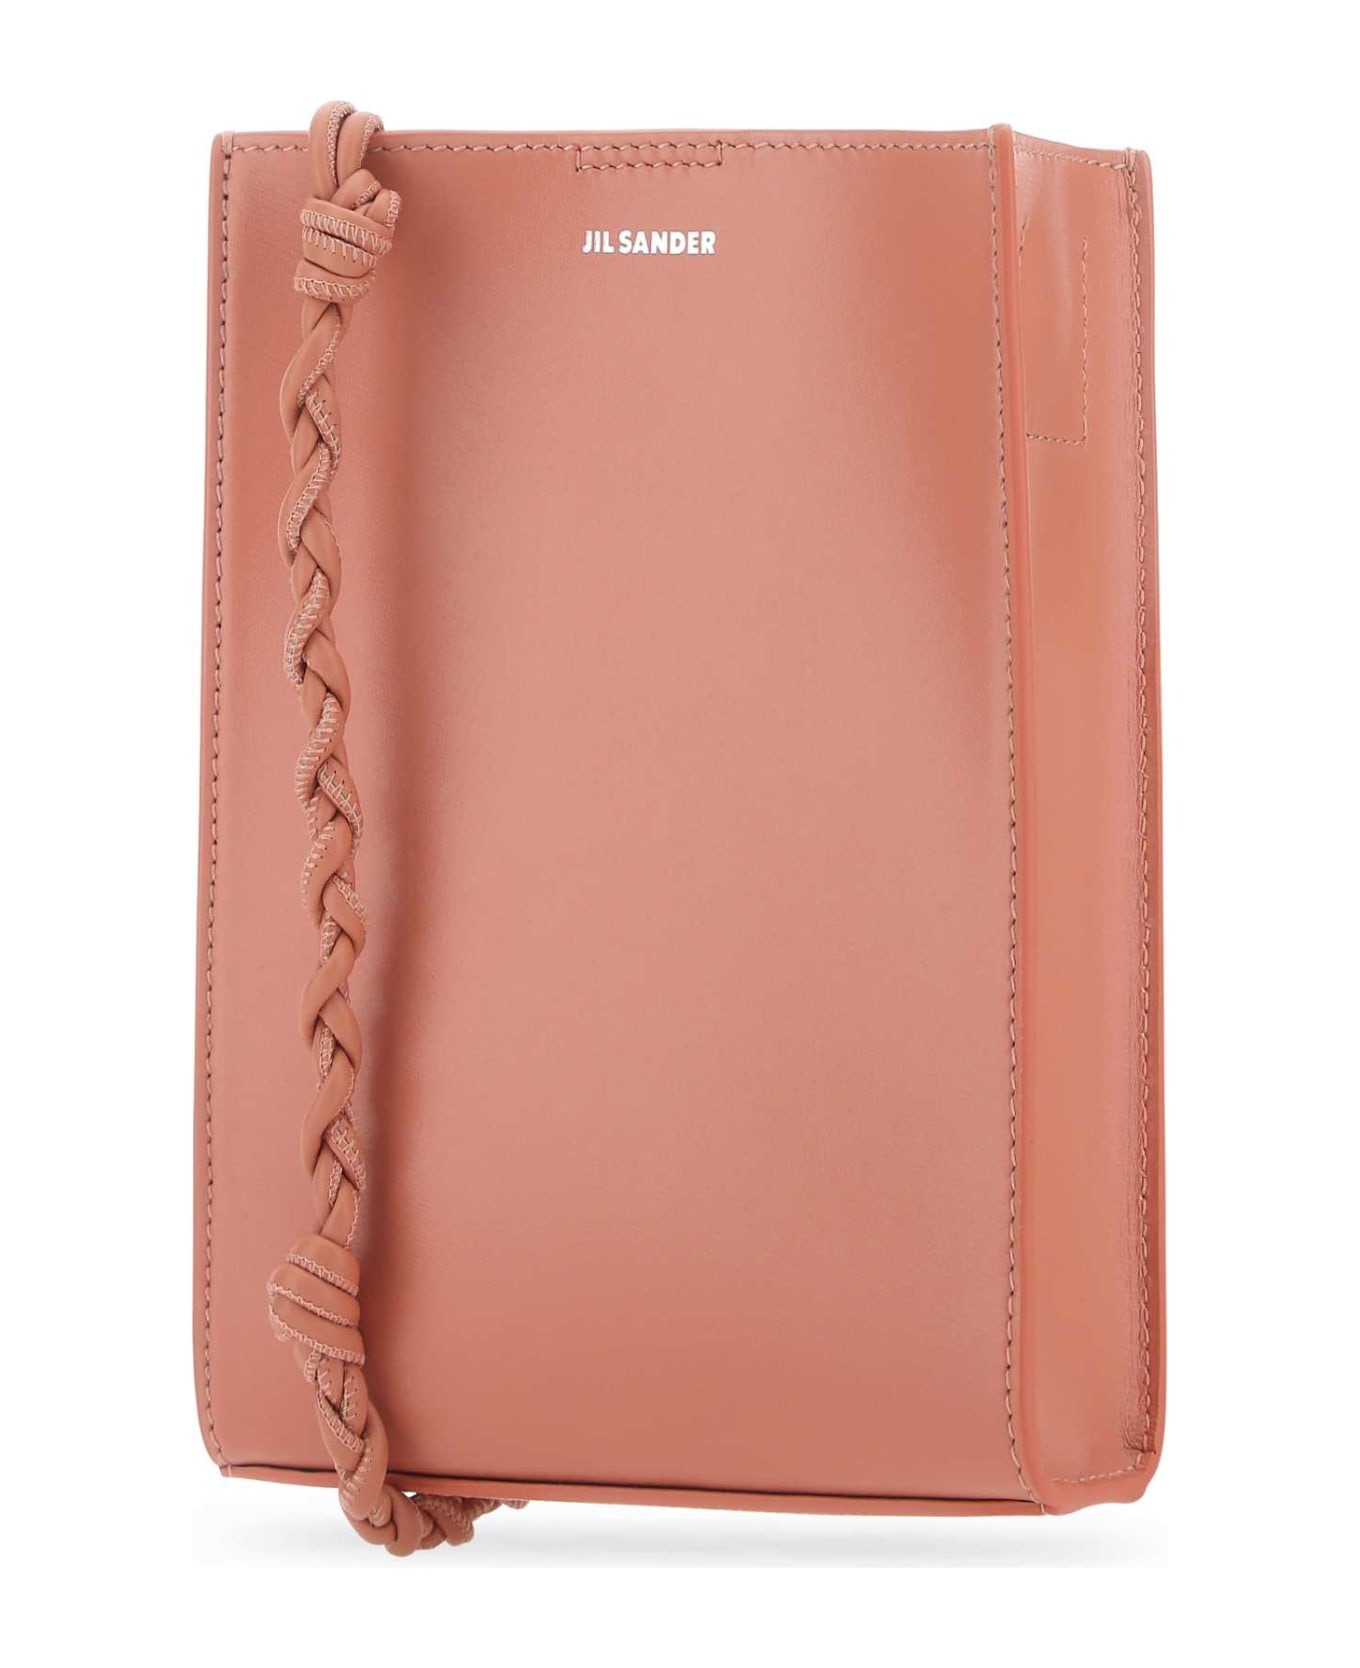 Jil Sander Pink Leather Small Tangle Shoulder Bag - 657